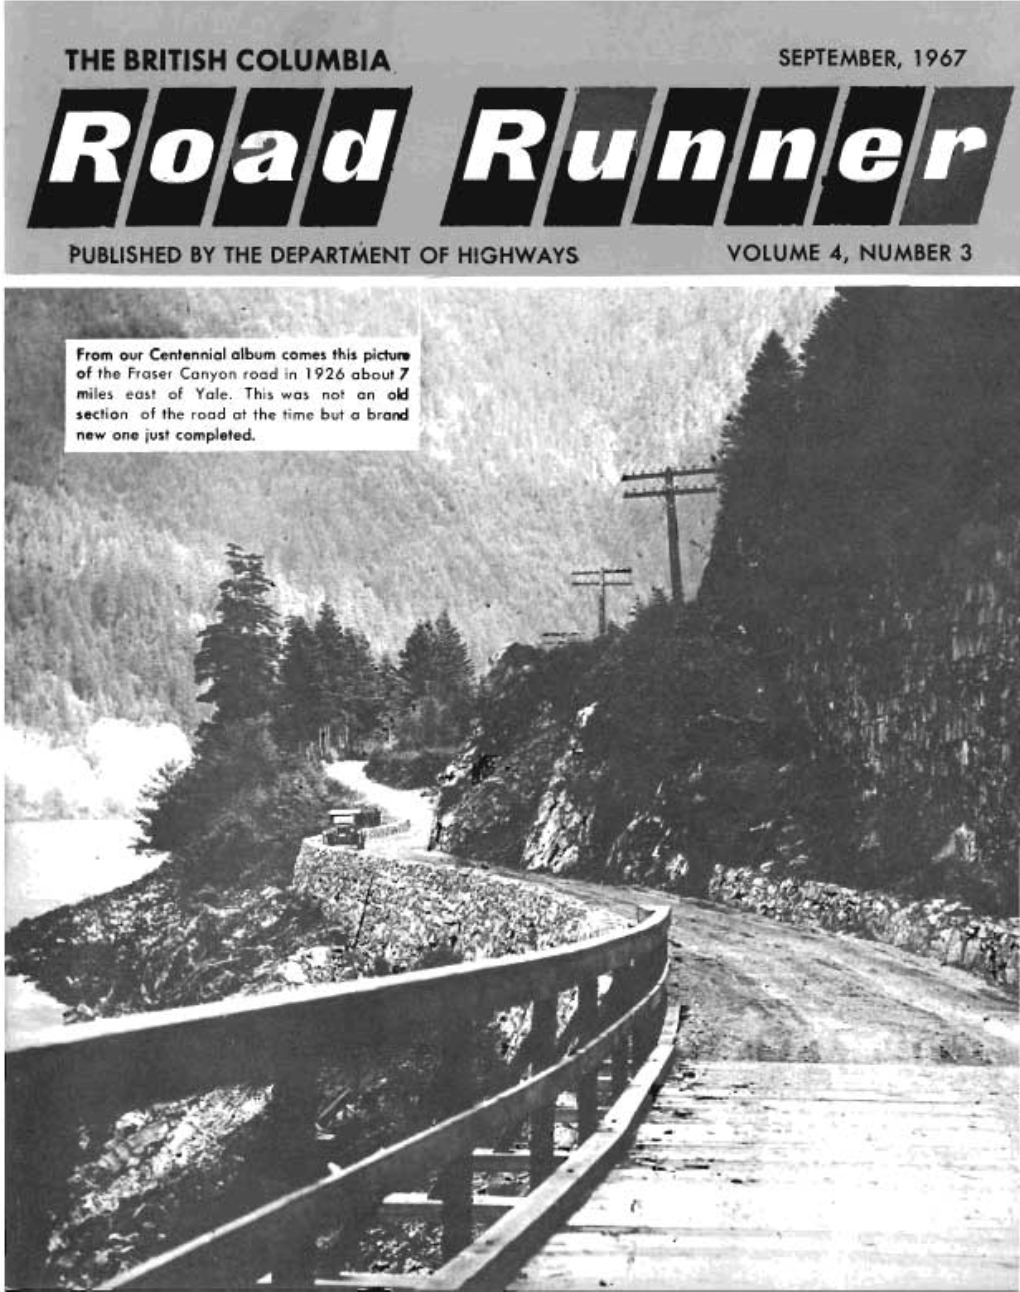 The British Columbia Road Runner